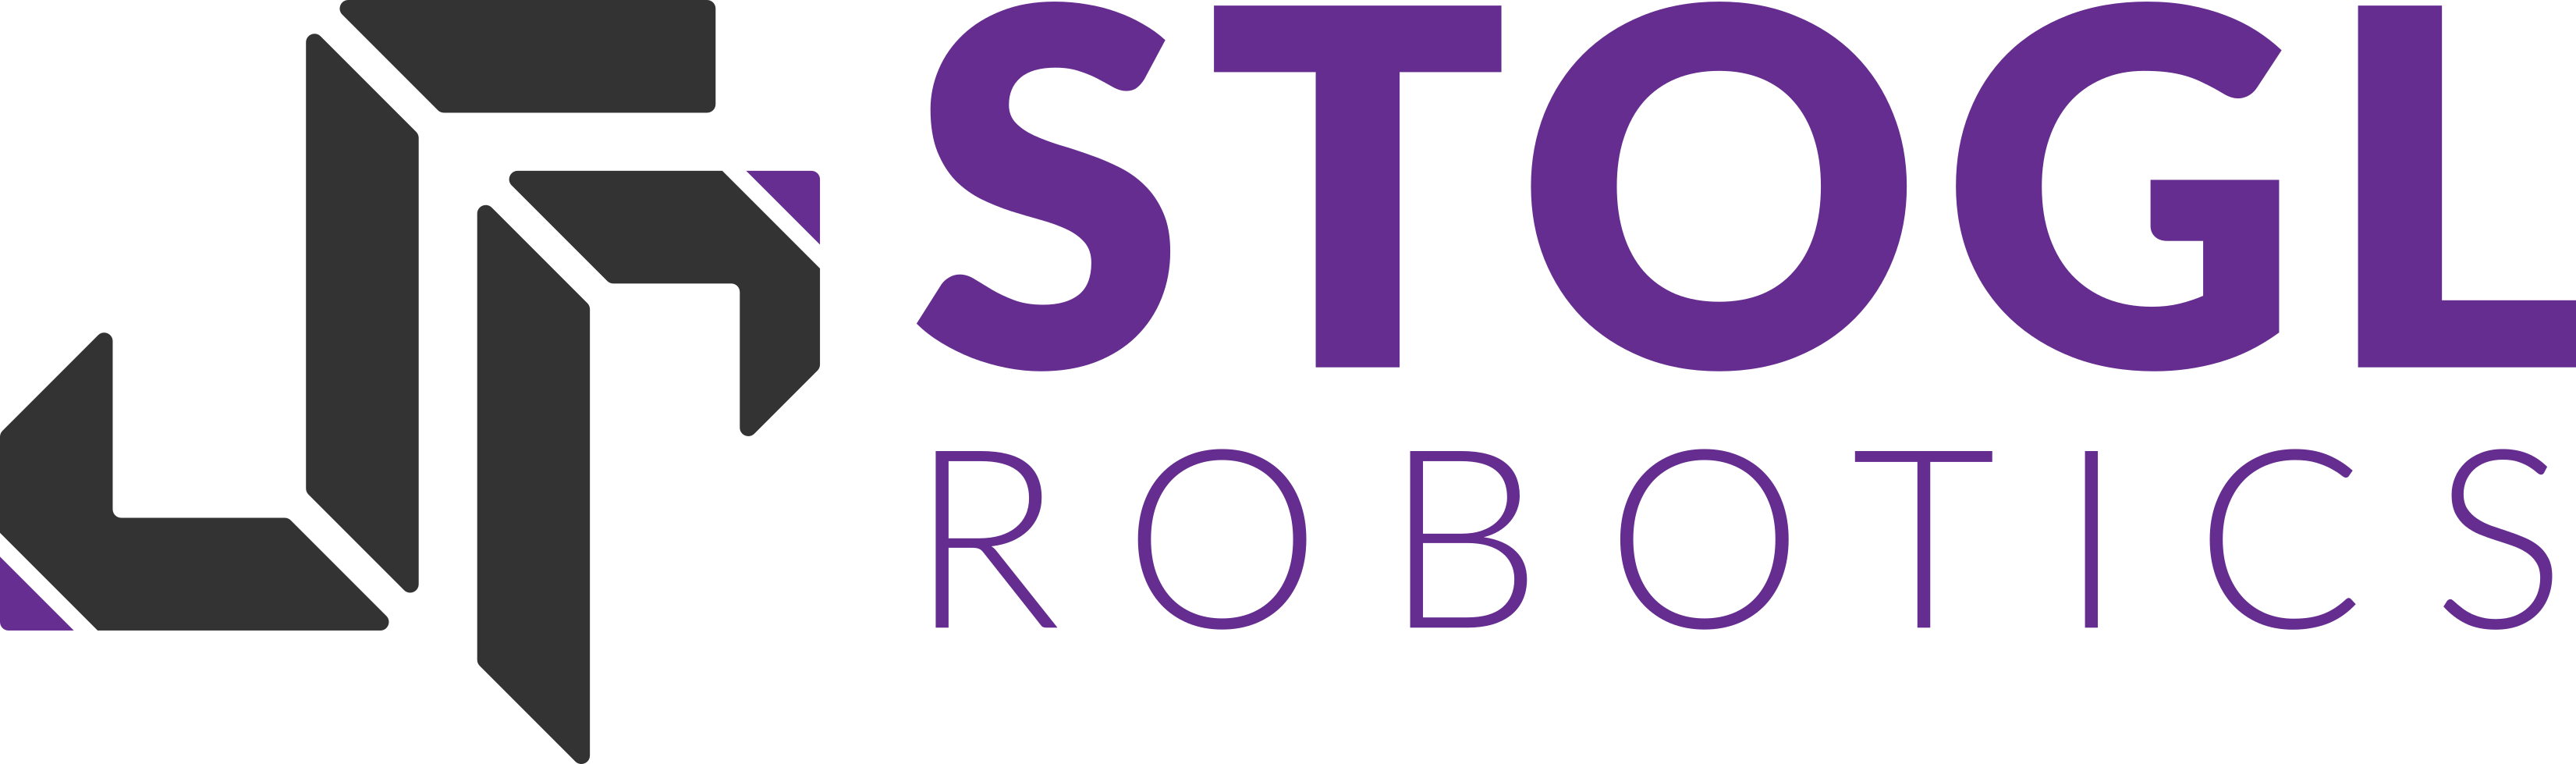 "Stogl Robotics Consulting"